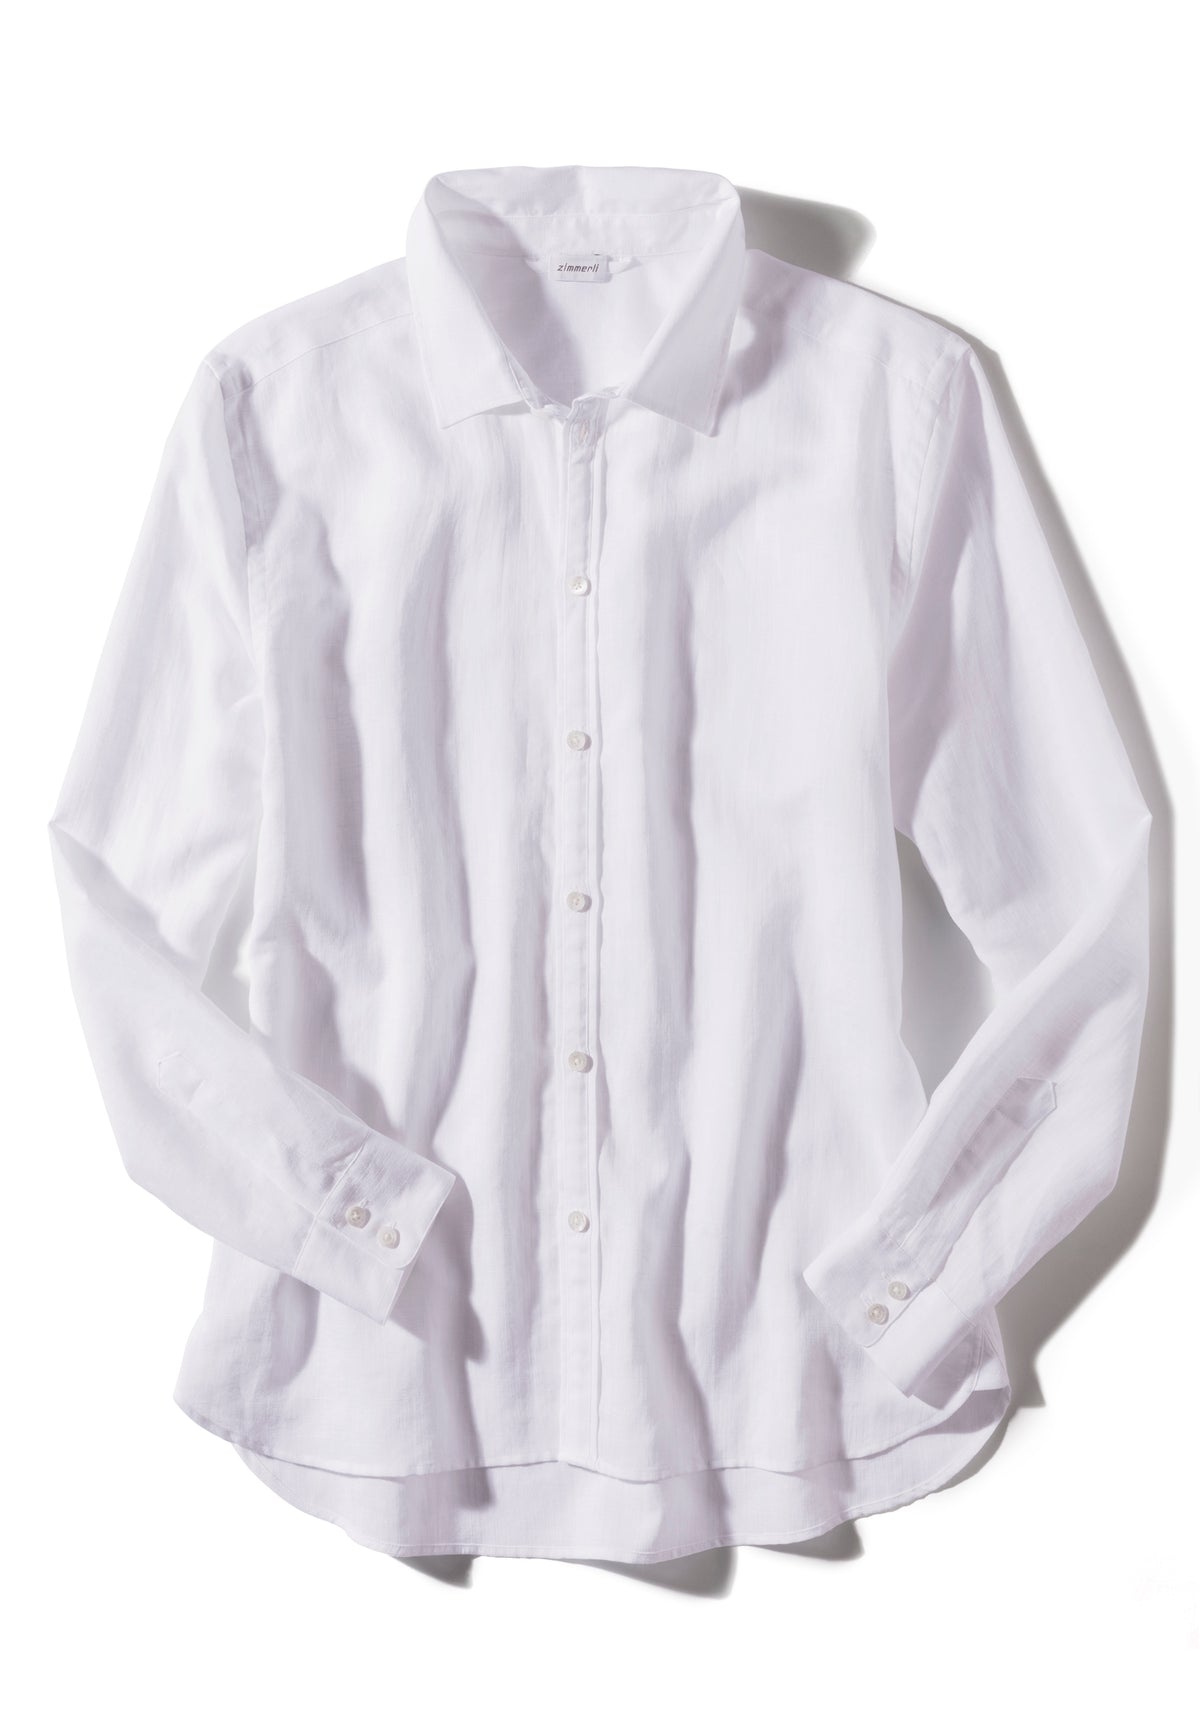 Linen Blend | Button Front Shirt Long Sleeve - white